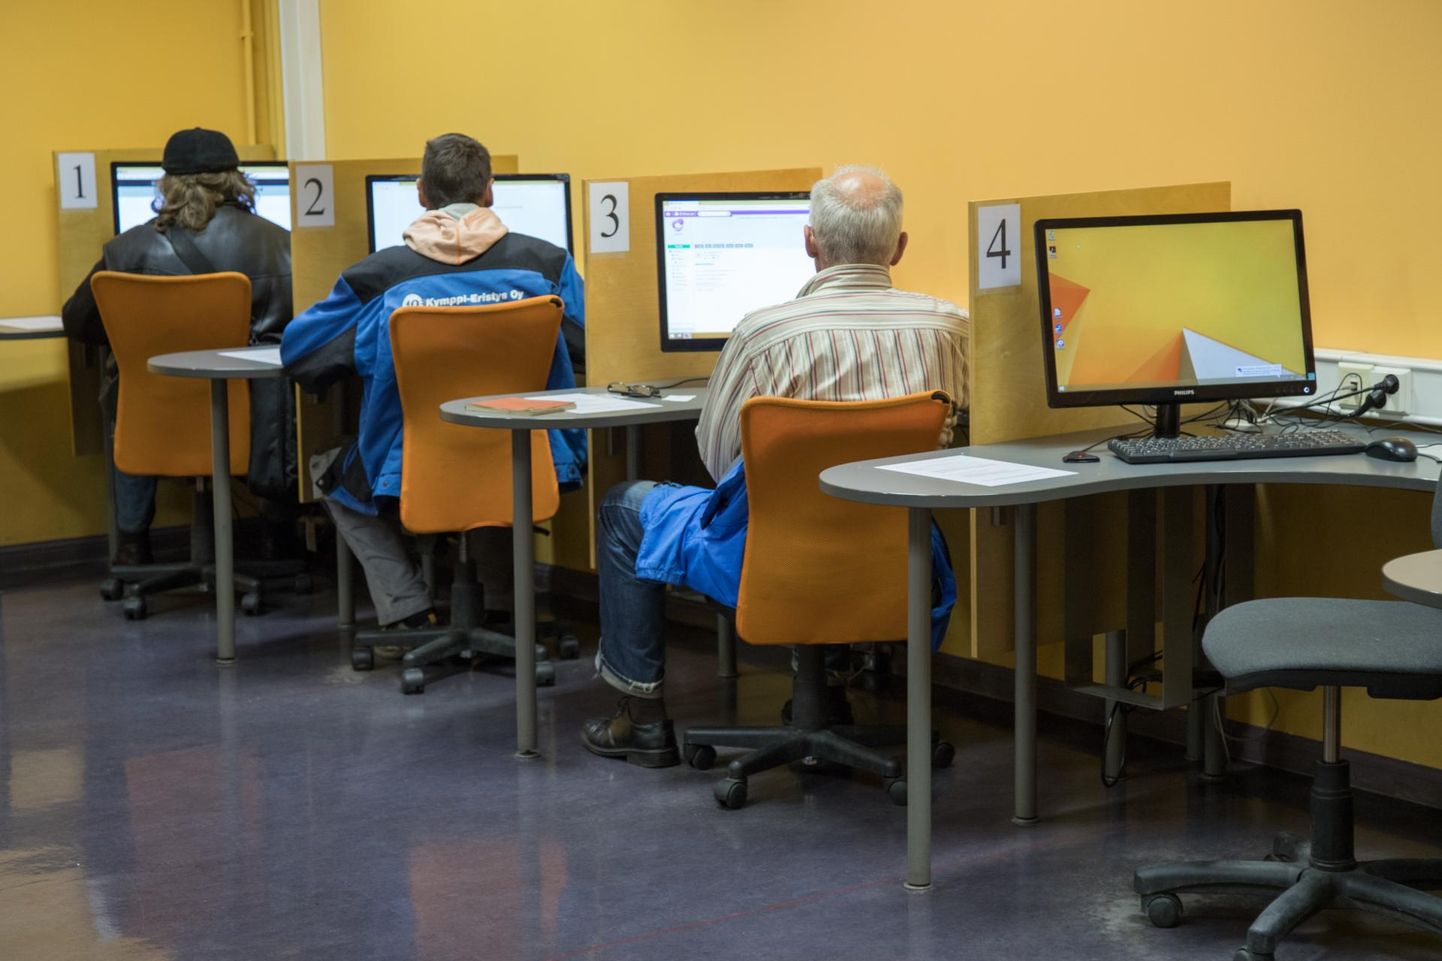 Viljandi avaliku internetipunkti seitse arvutit on raamatukogu esimesel korrusel. Võimalik, et seda saali tahab endale linnavalitsus.